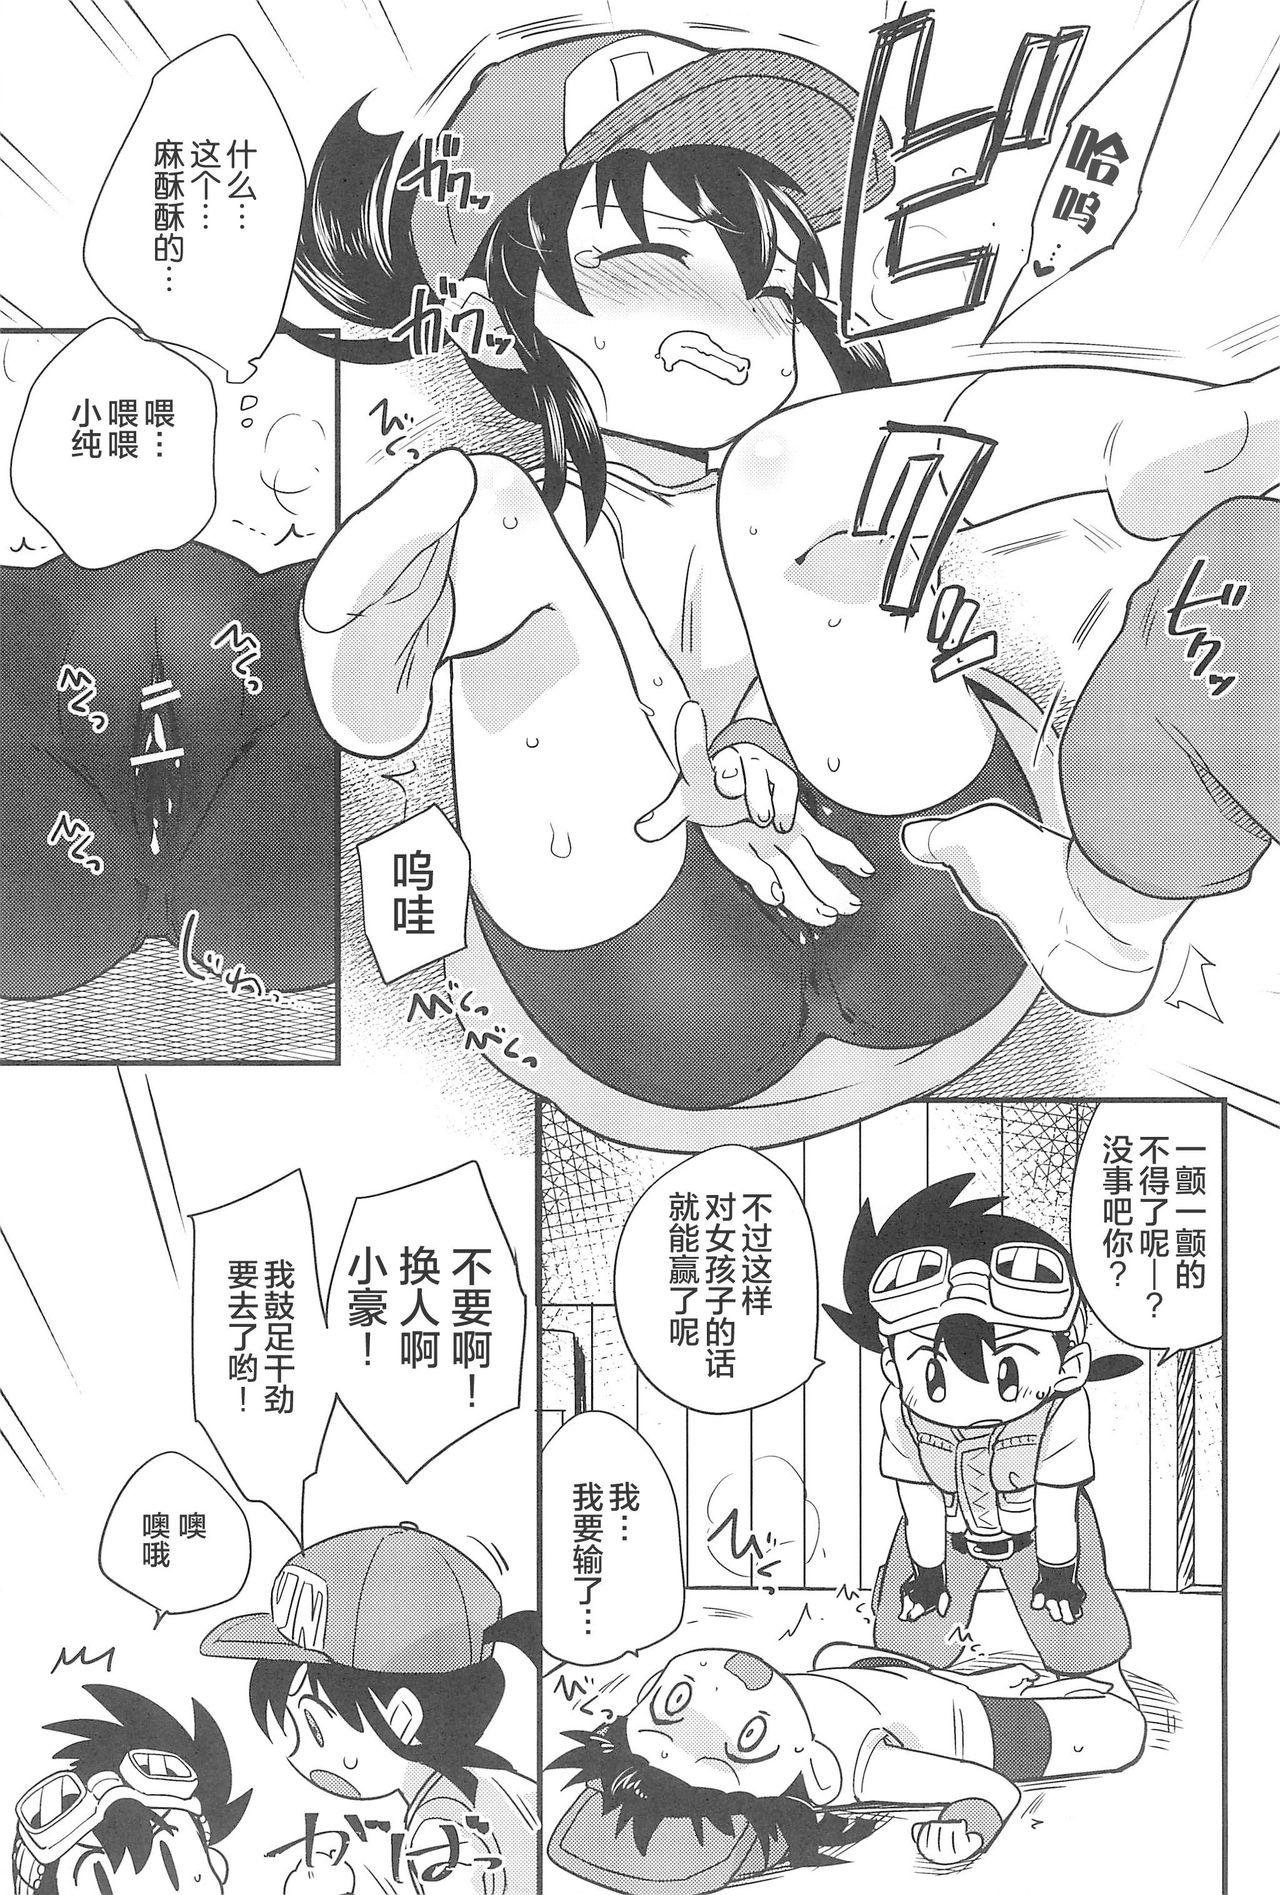 Web Denki no Chikaratte Sugee! - Bakusou kyoudai lets and go Novinhas - Page 9